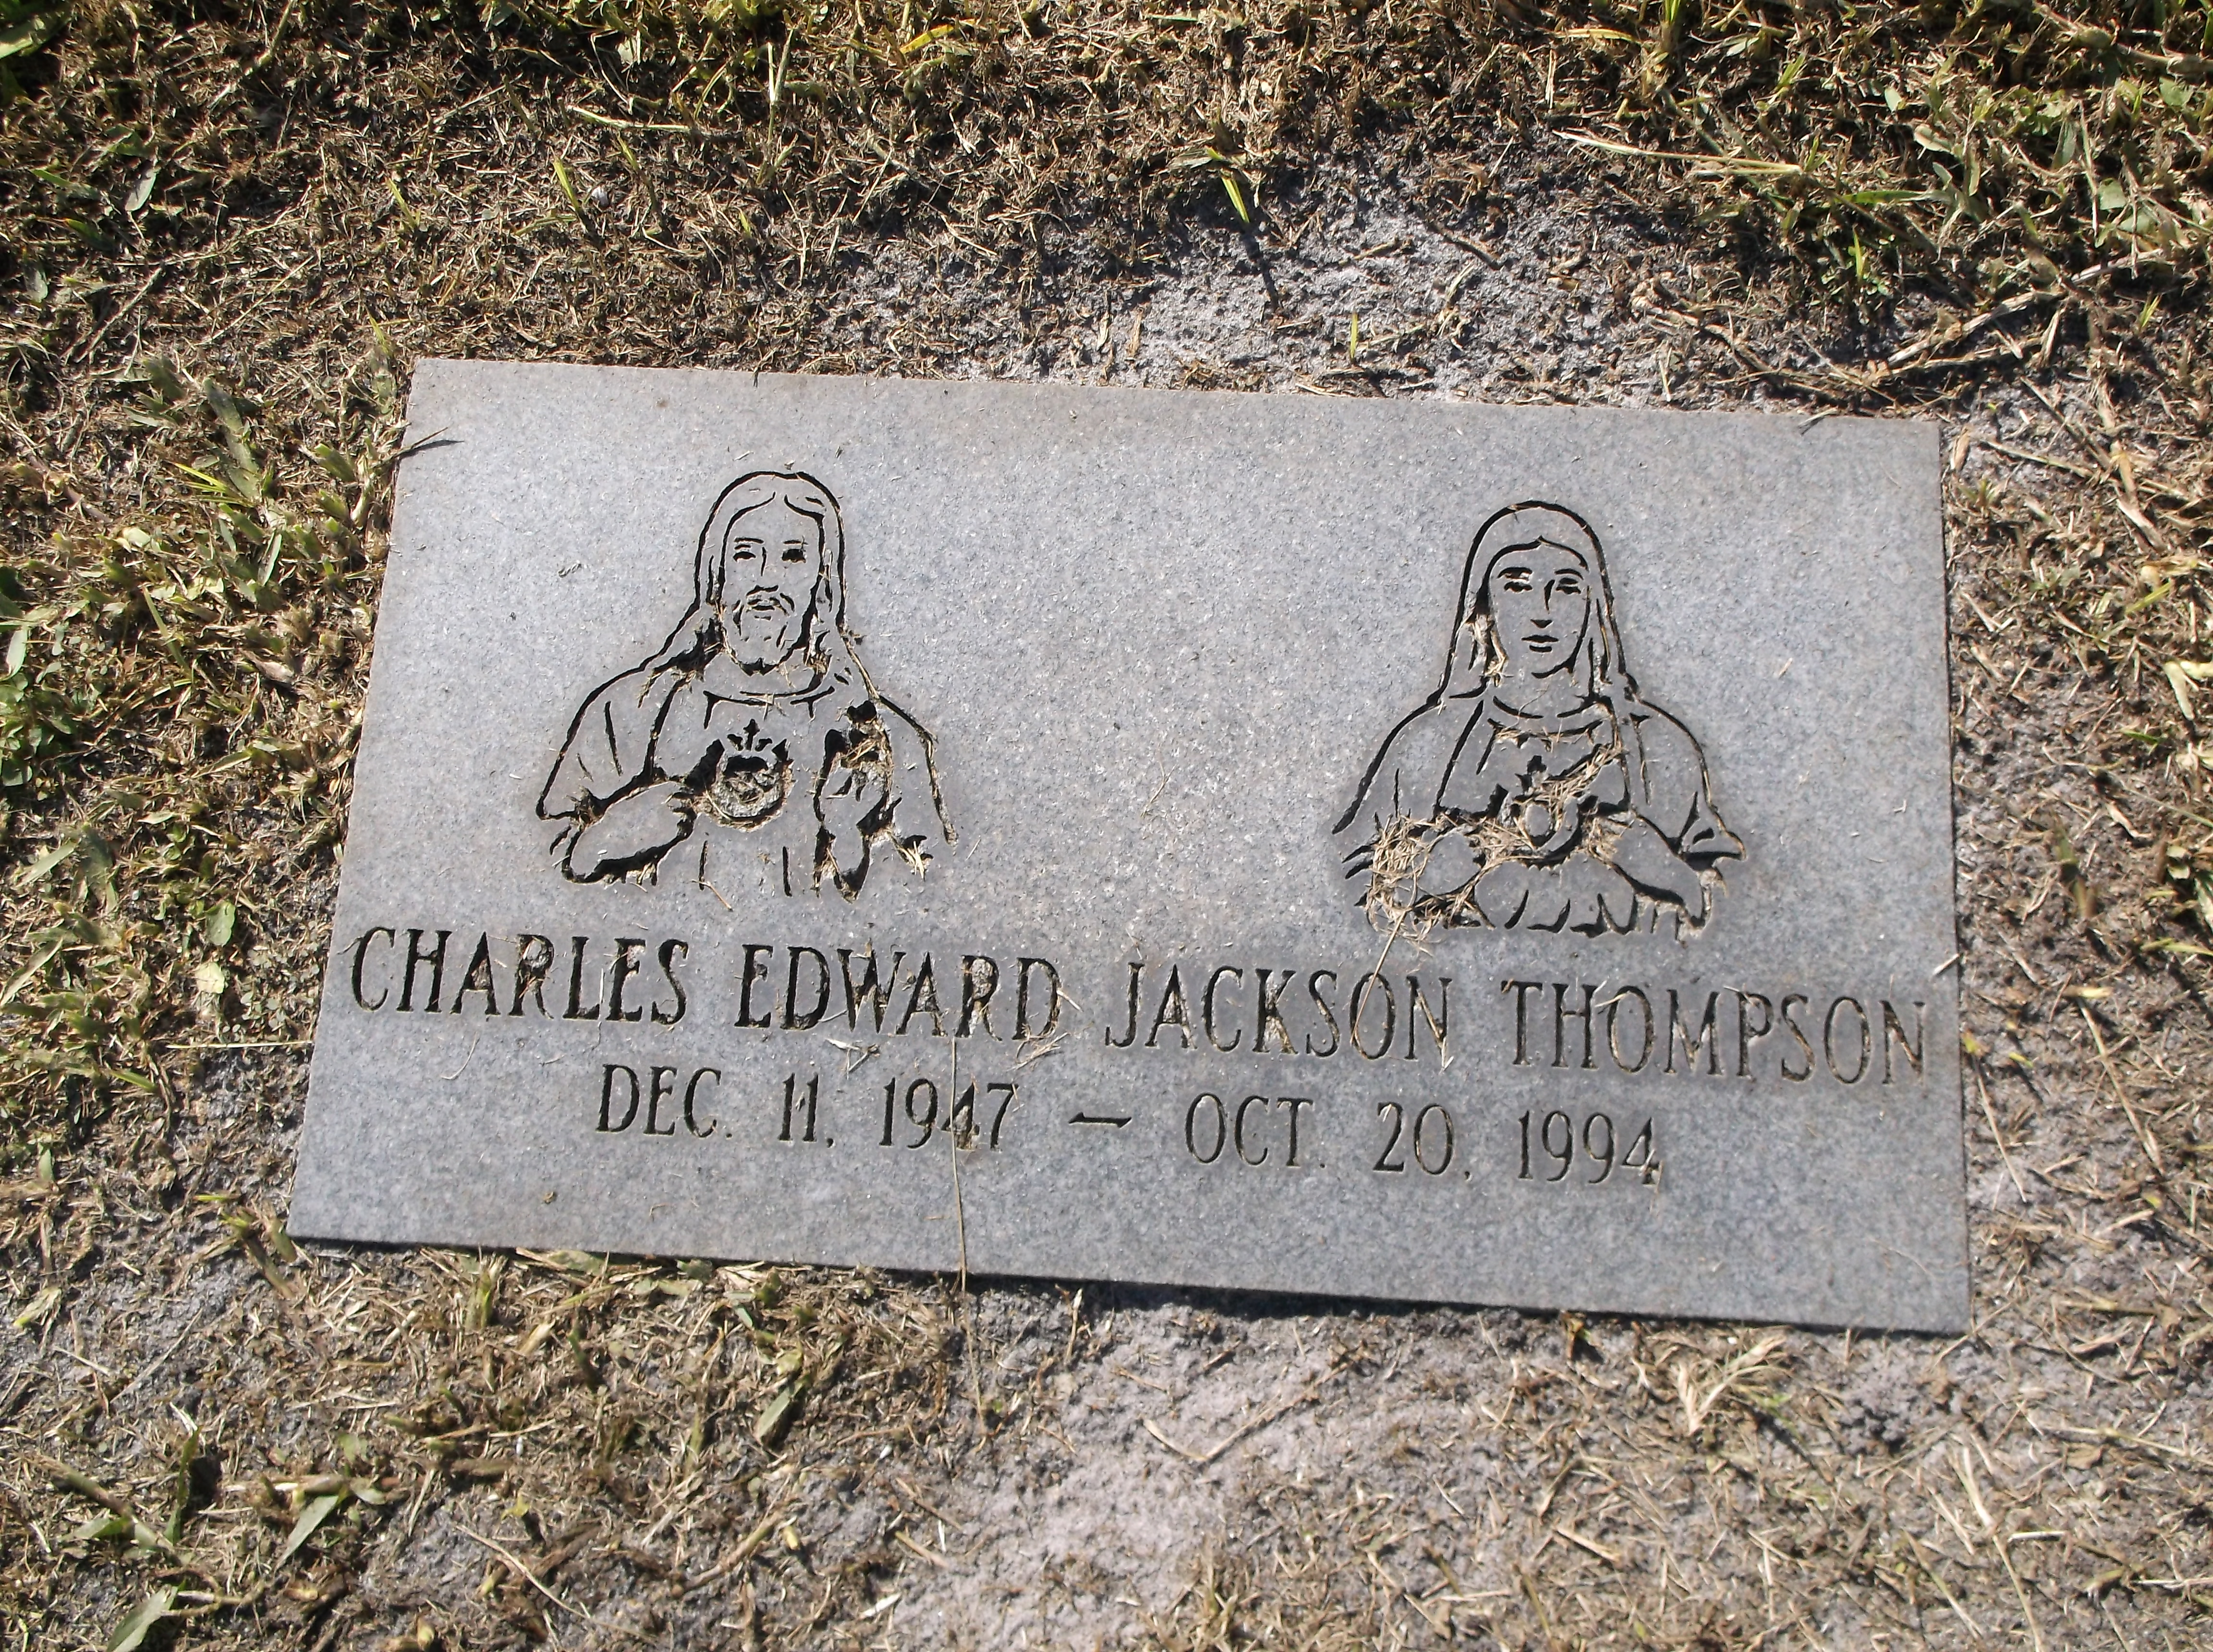 Charles Edward Jackson Thompson